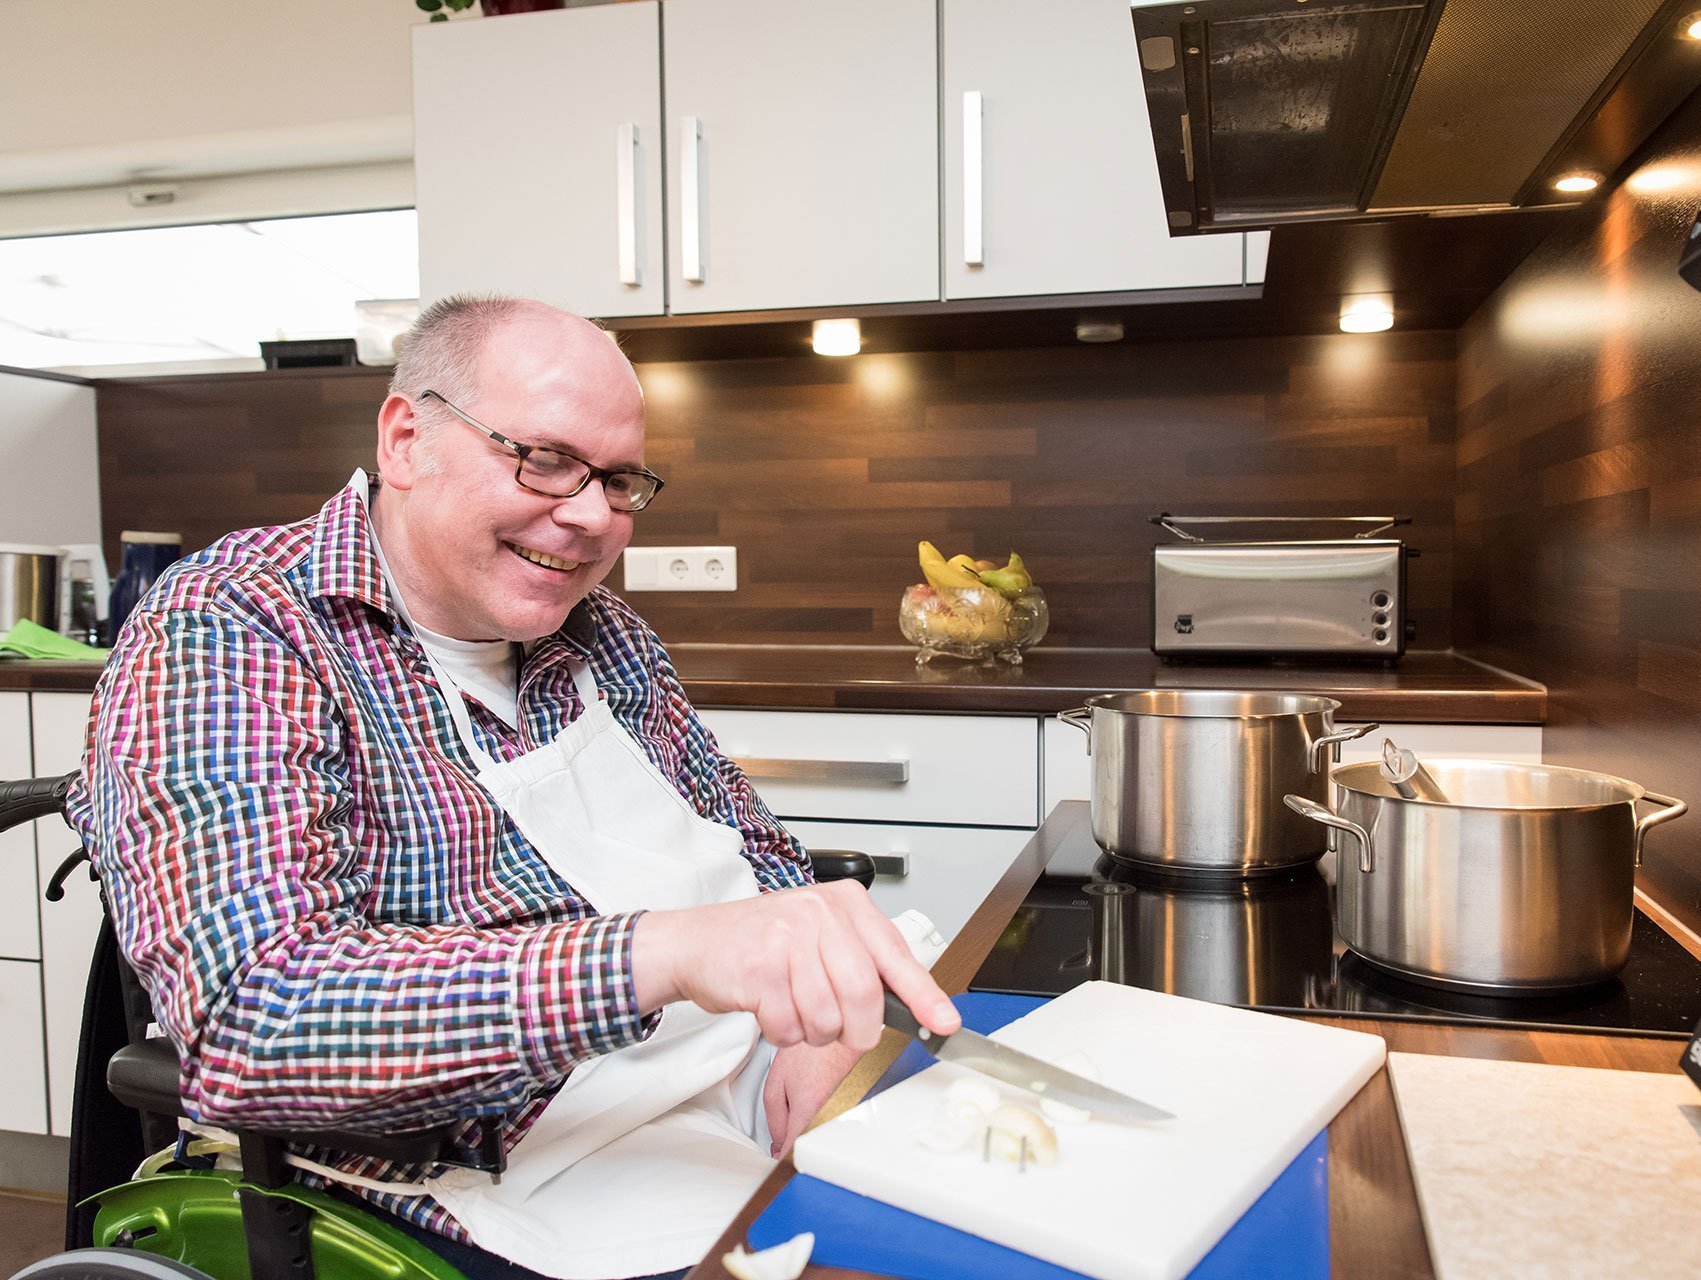 Küchenarbeit: Ein Mann im Rollstuhl schneidet Zwiebeln - lacht dabei